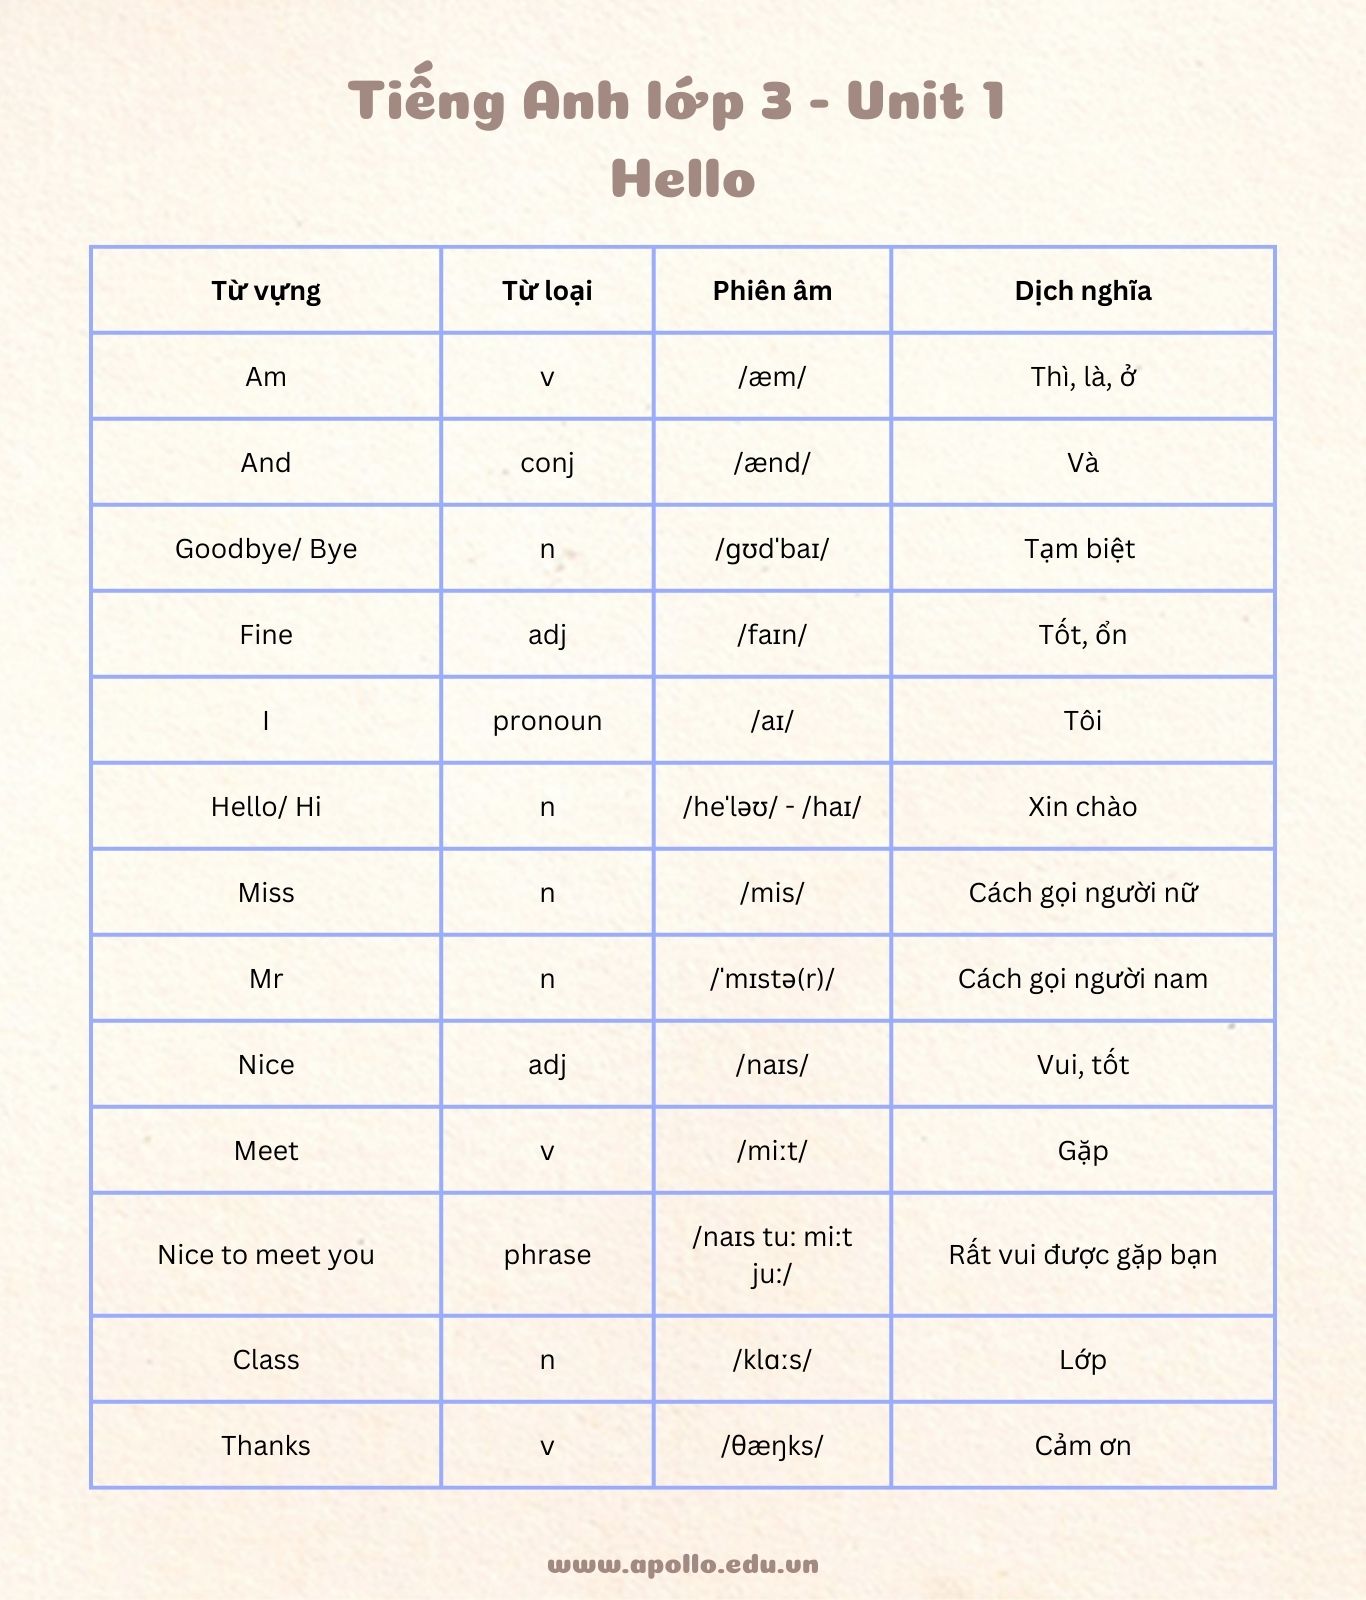 Bộ từ vựng tiếng Anh lớp 3 chủ đề “Hello”